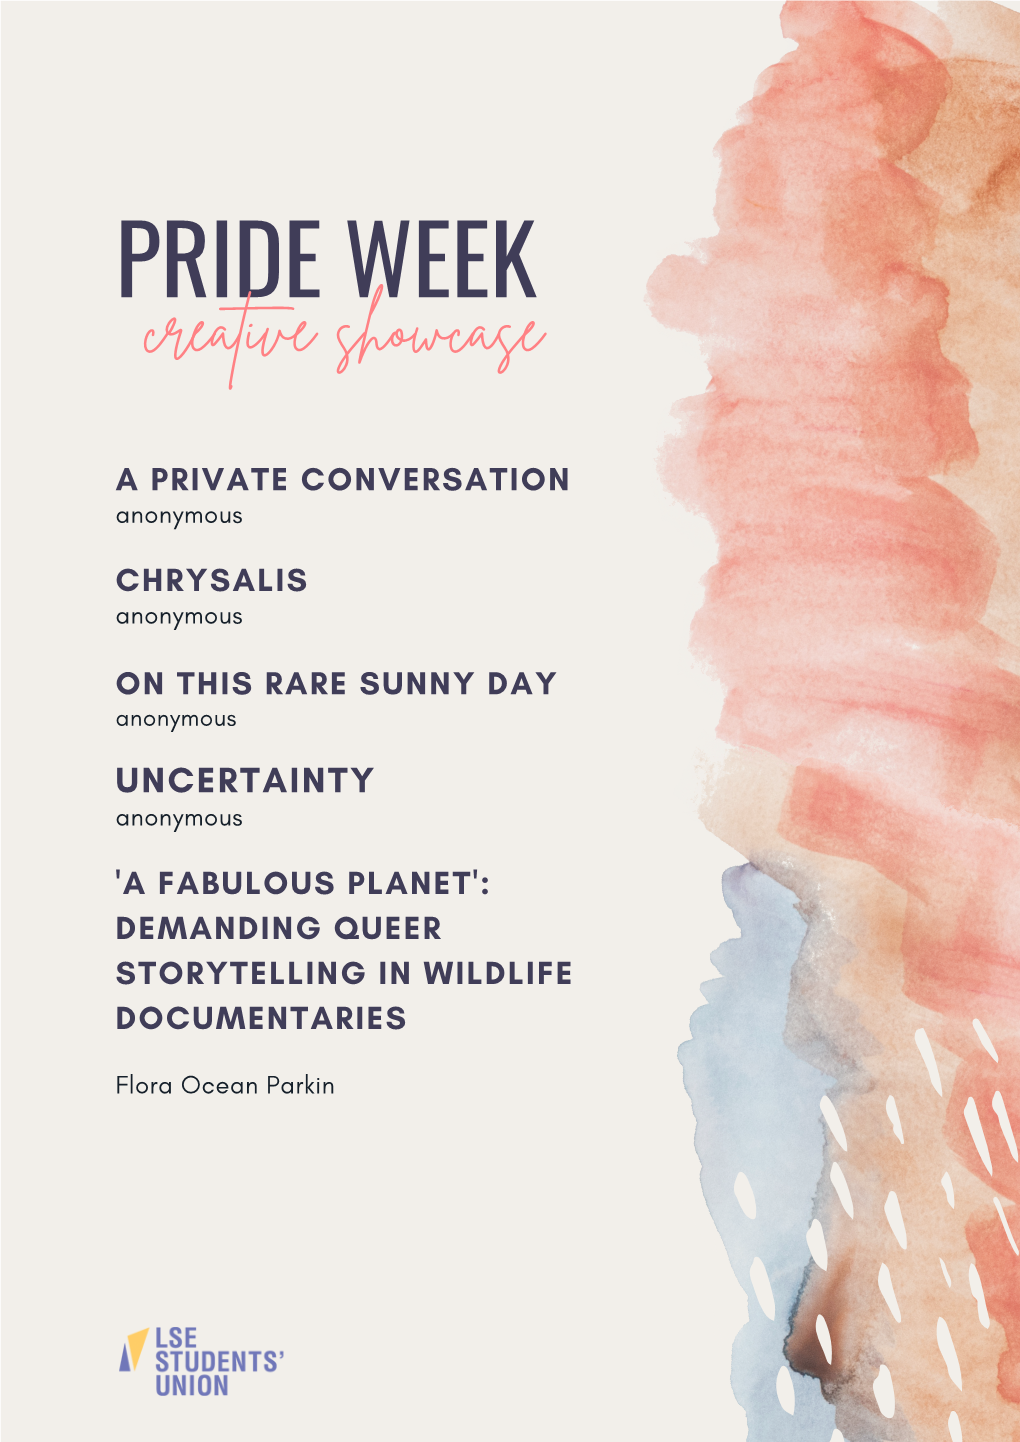 Pride Week Creative Showcase